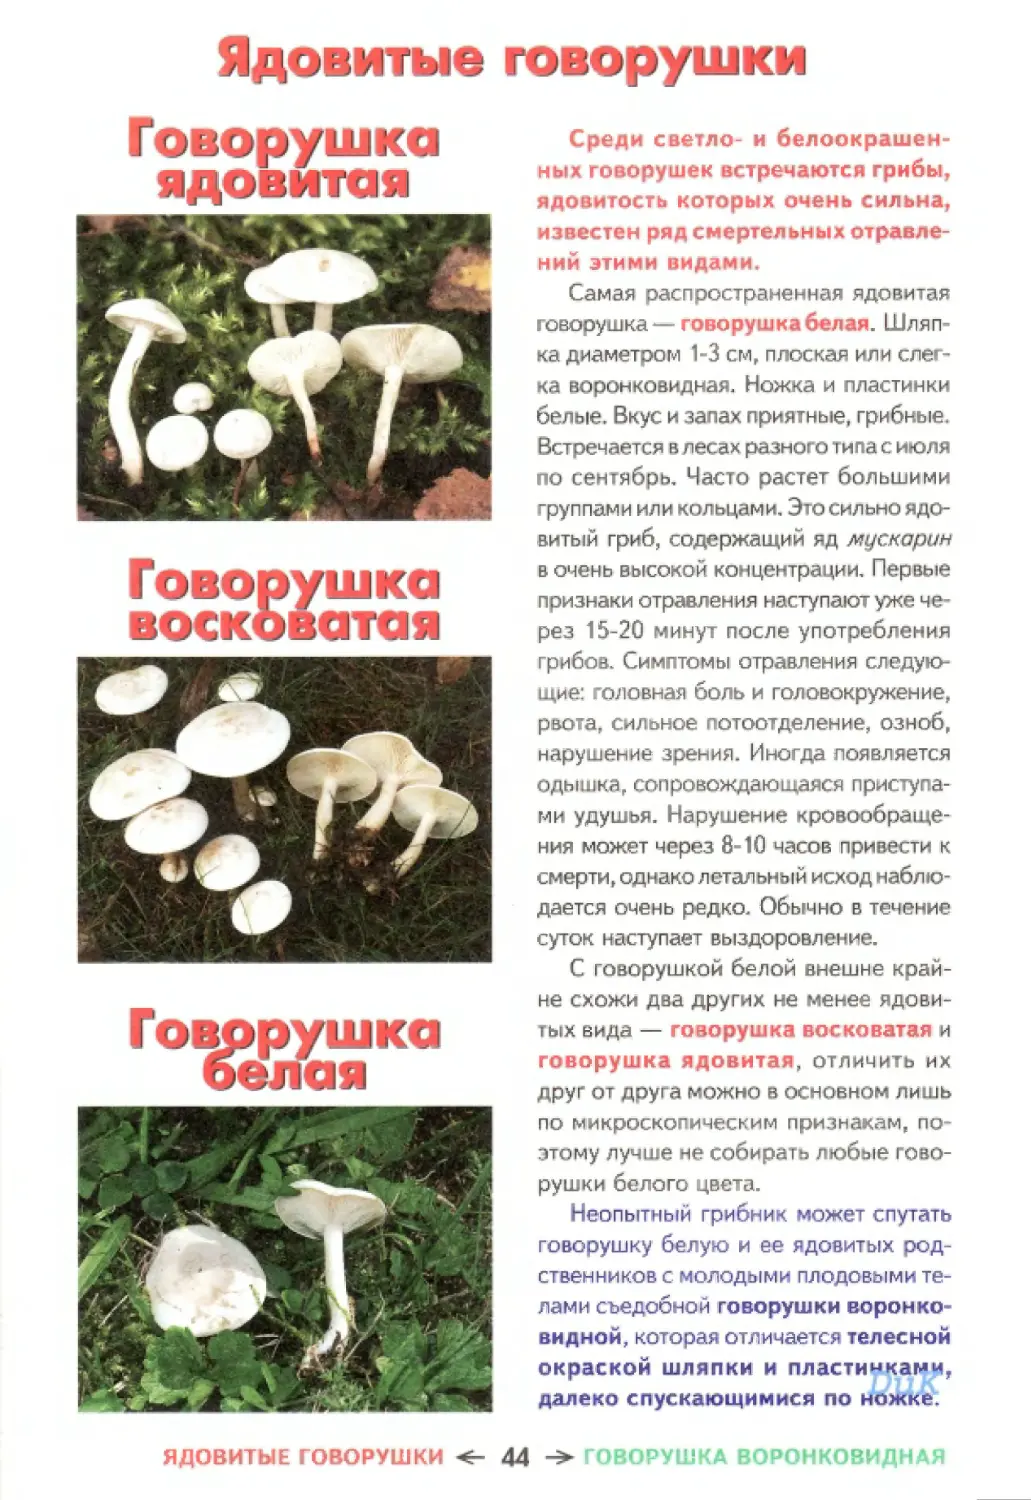 Съедобные грибы и их несъедобные двойники